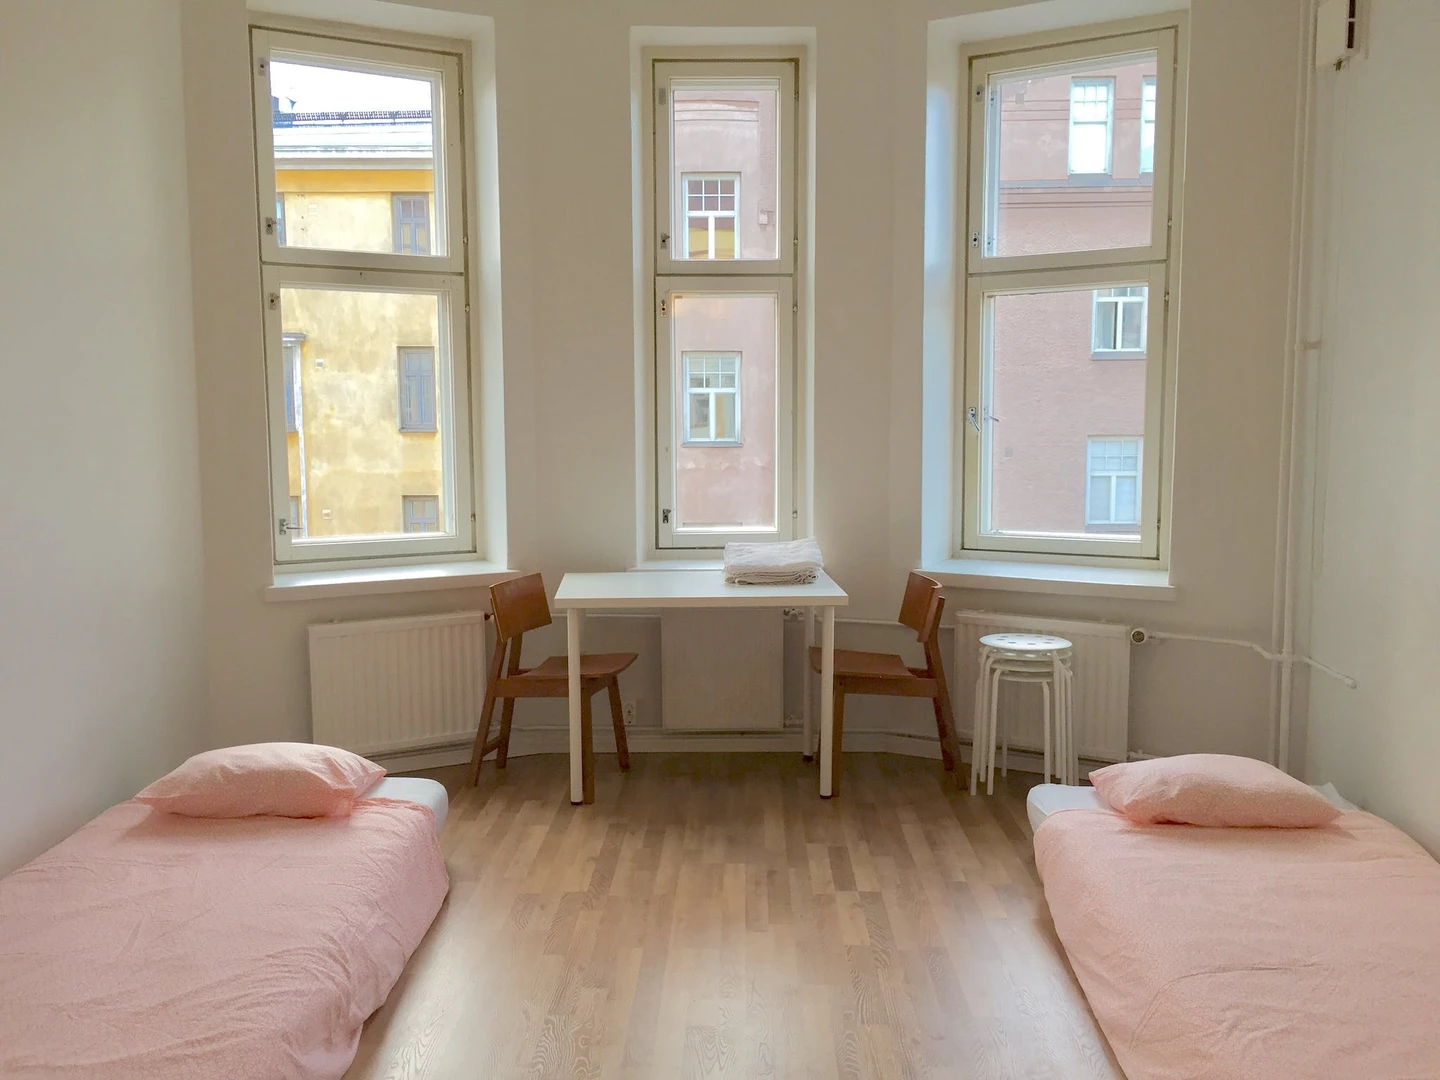 Apartamento moderno y luminoso en helsinki